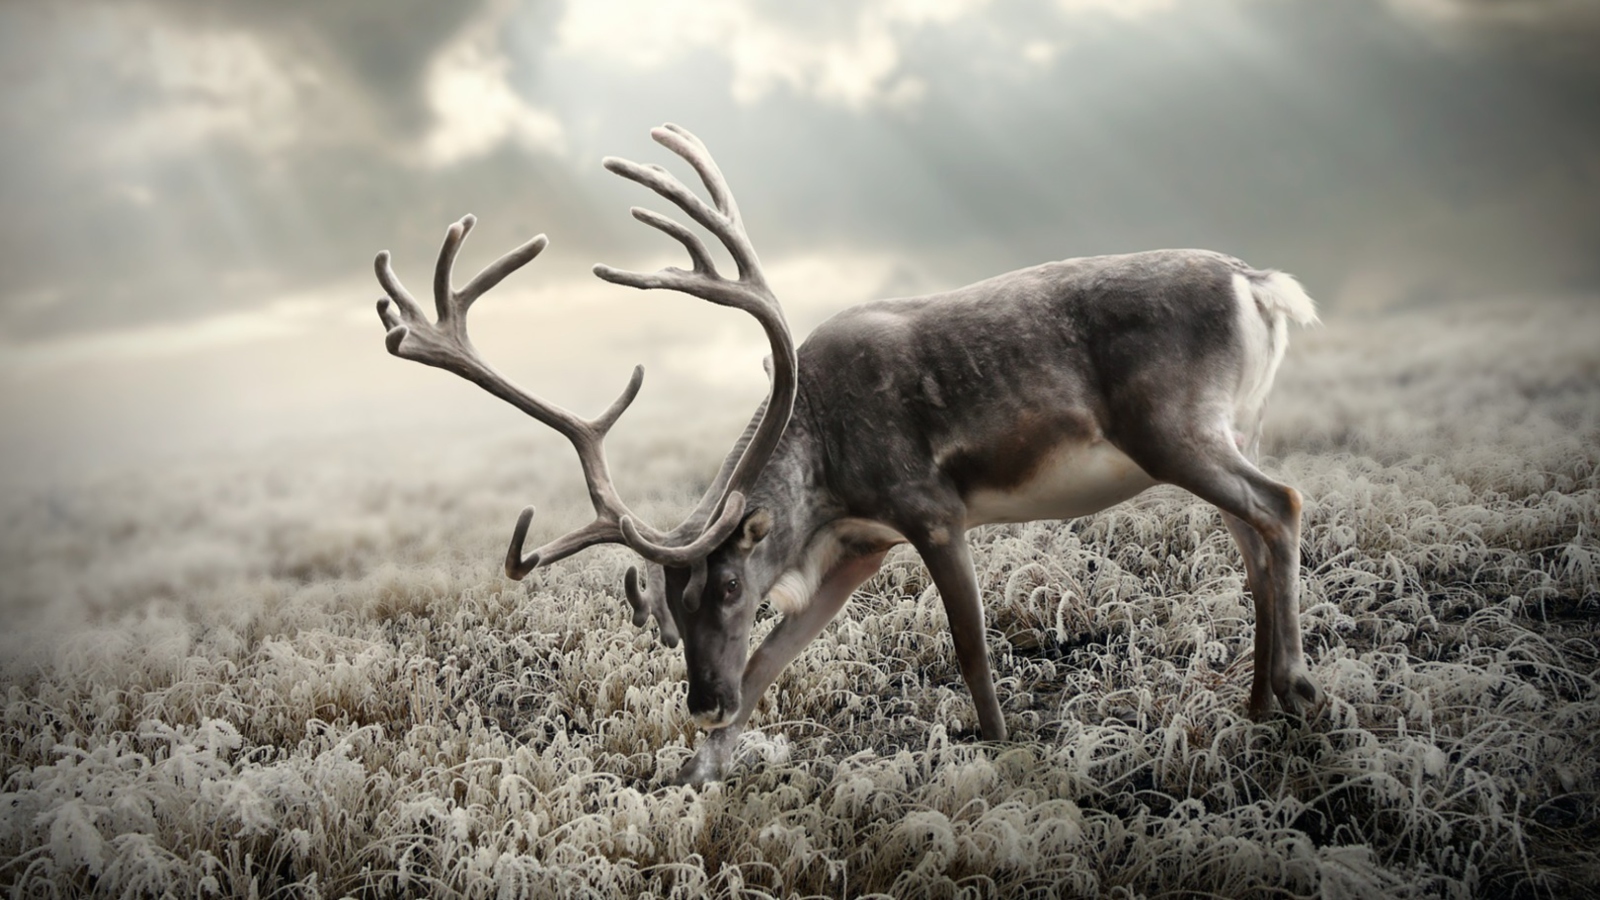 Обои Reindeer In Tundra 1600x900